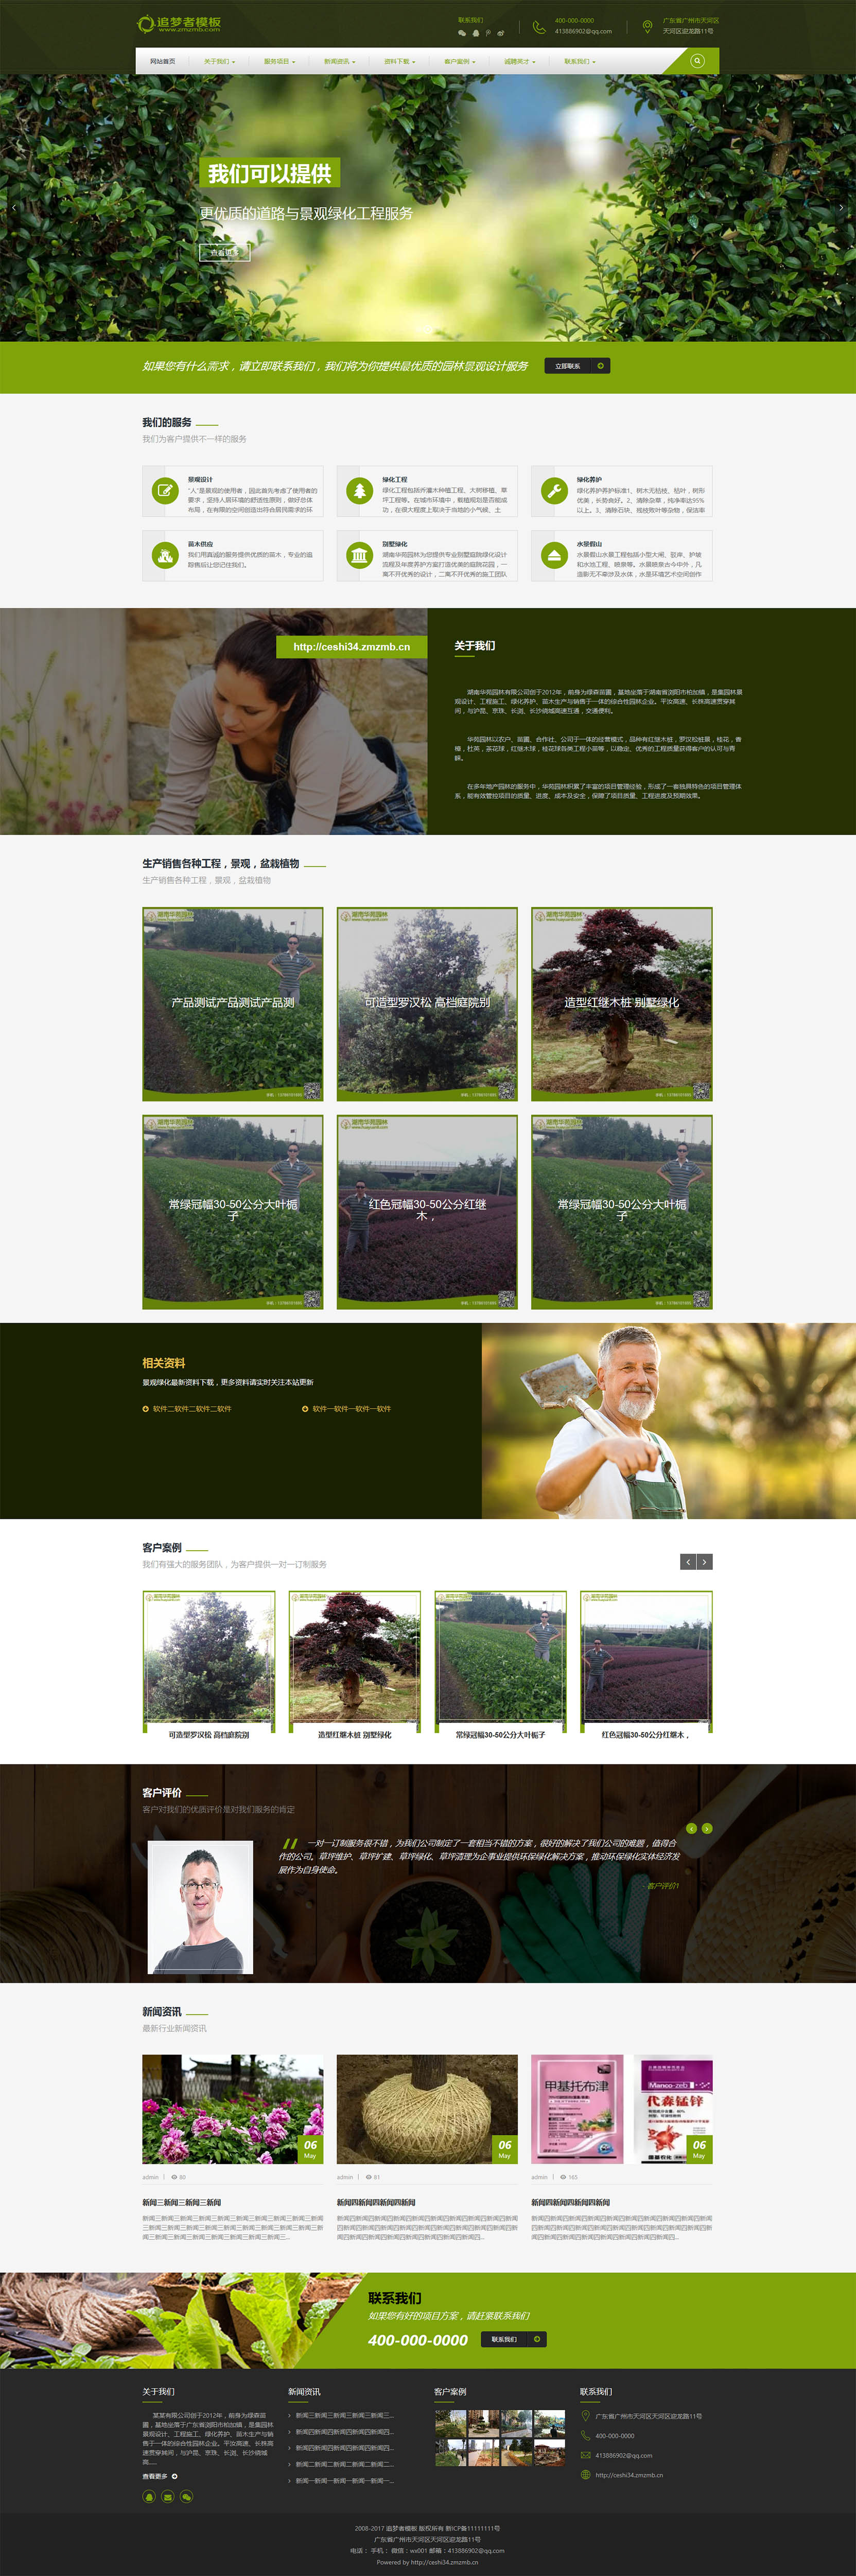 绿色html5响应式农业产品加工行业类织梦模板(自适应)